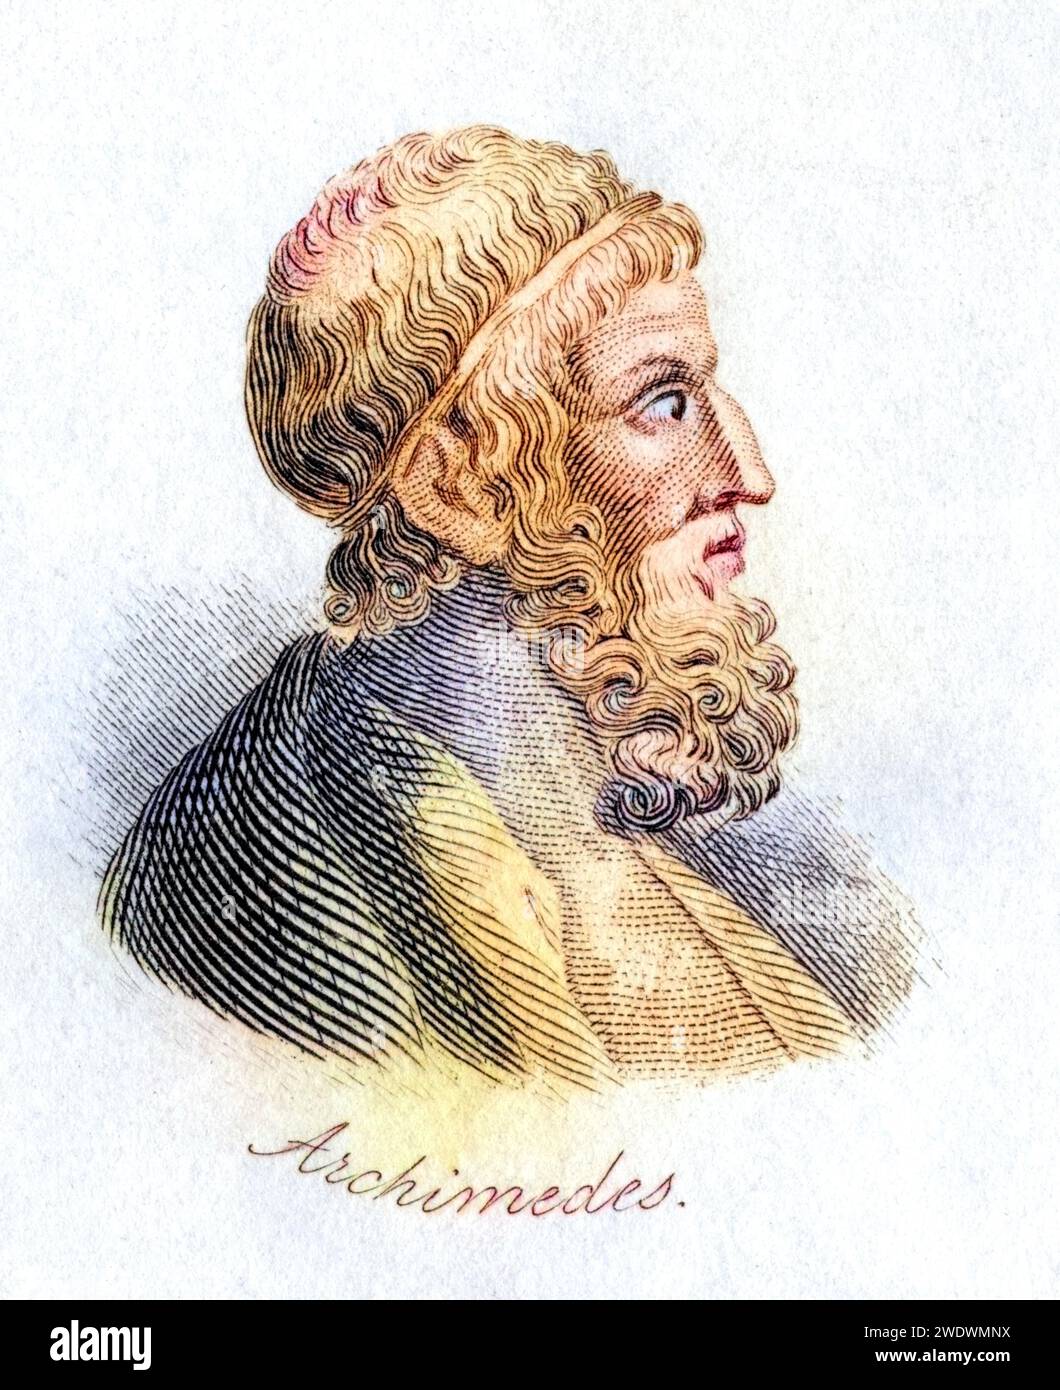 Archimedes von Syrakus, Sizilien, 287 v. Chr. bis 212 v. Chr. Mathematiker, Historisch, digital restaurierte Reproduktion von einer Vorlage aus dem 19. Jahrhundert, Record date not stated Stock Photo